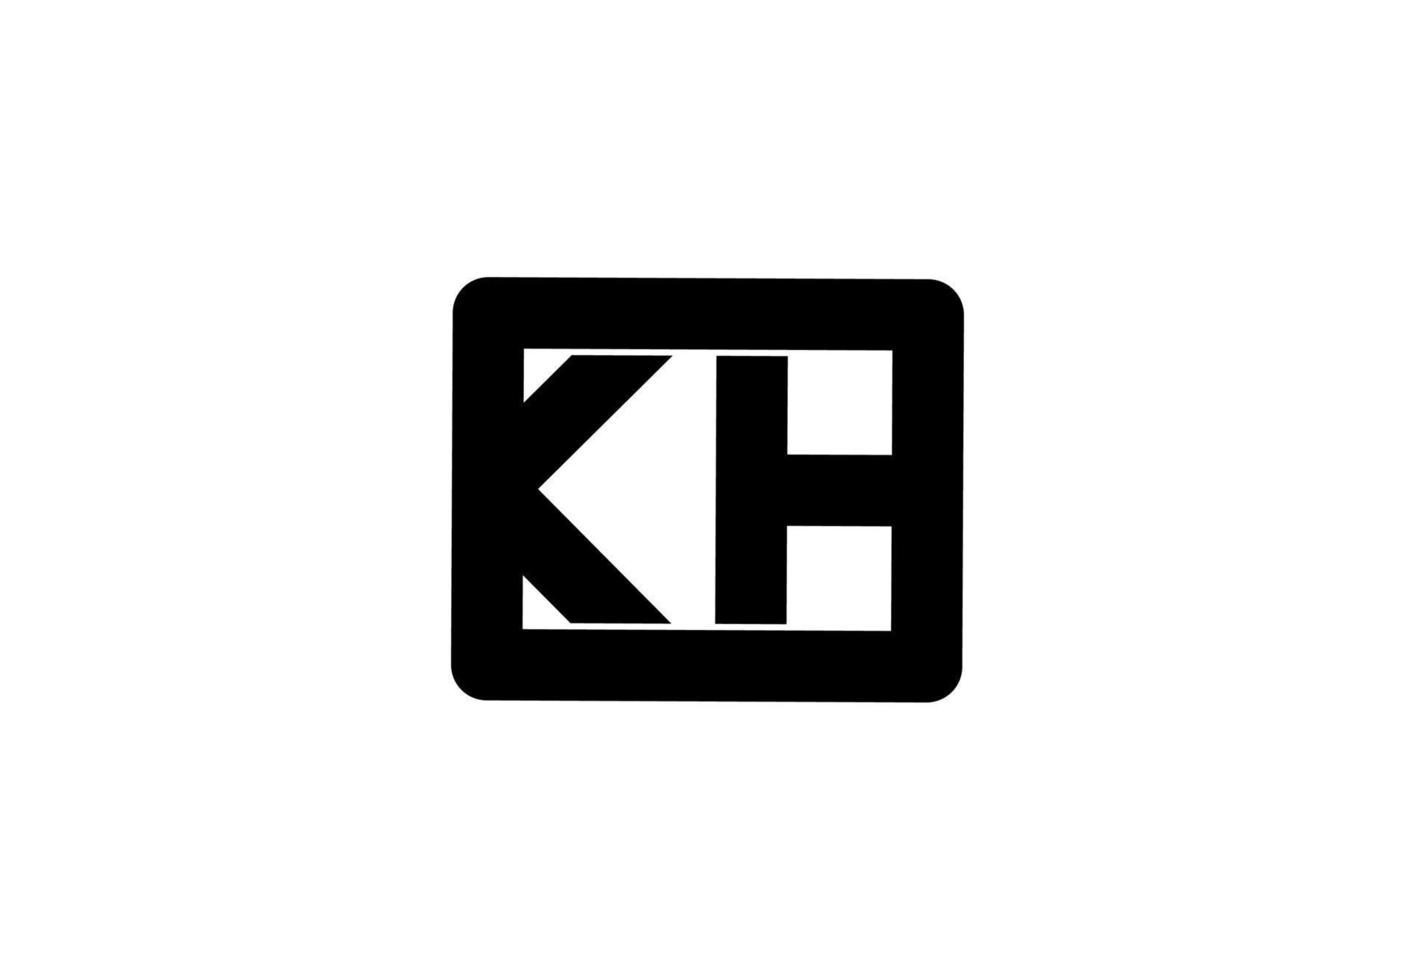 kh hk k h initial letter logo vector